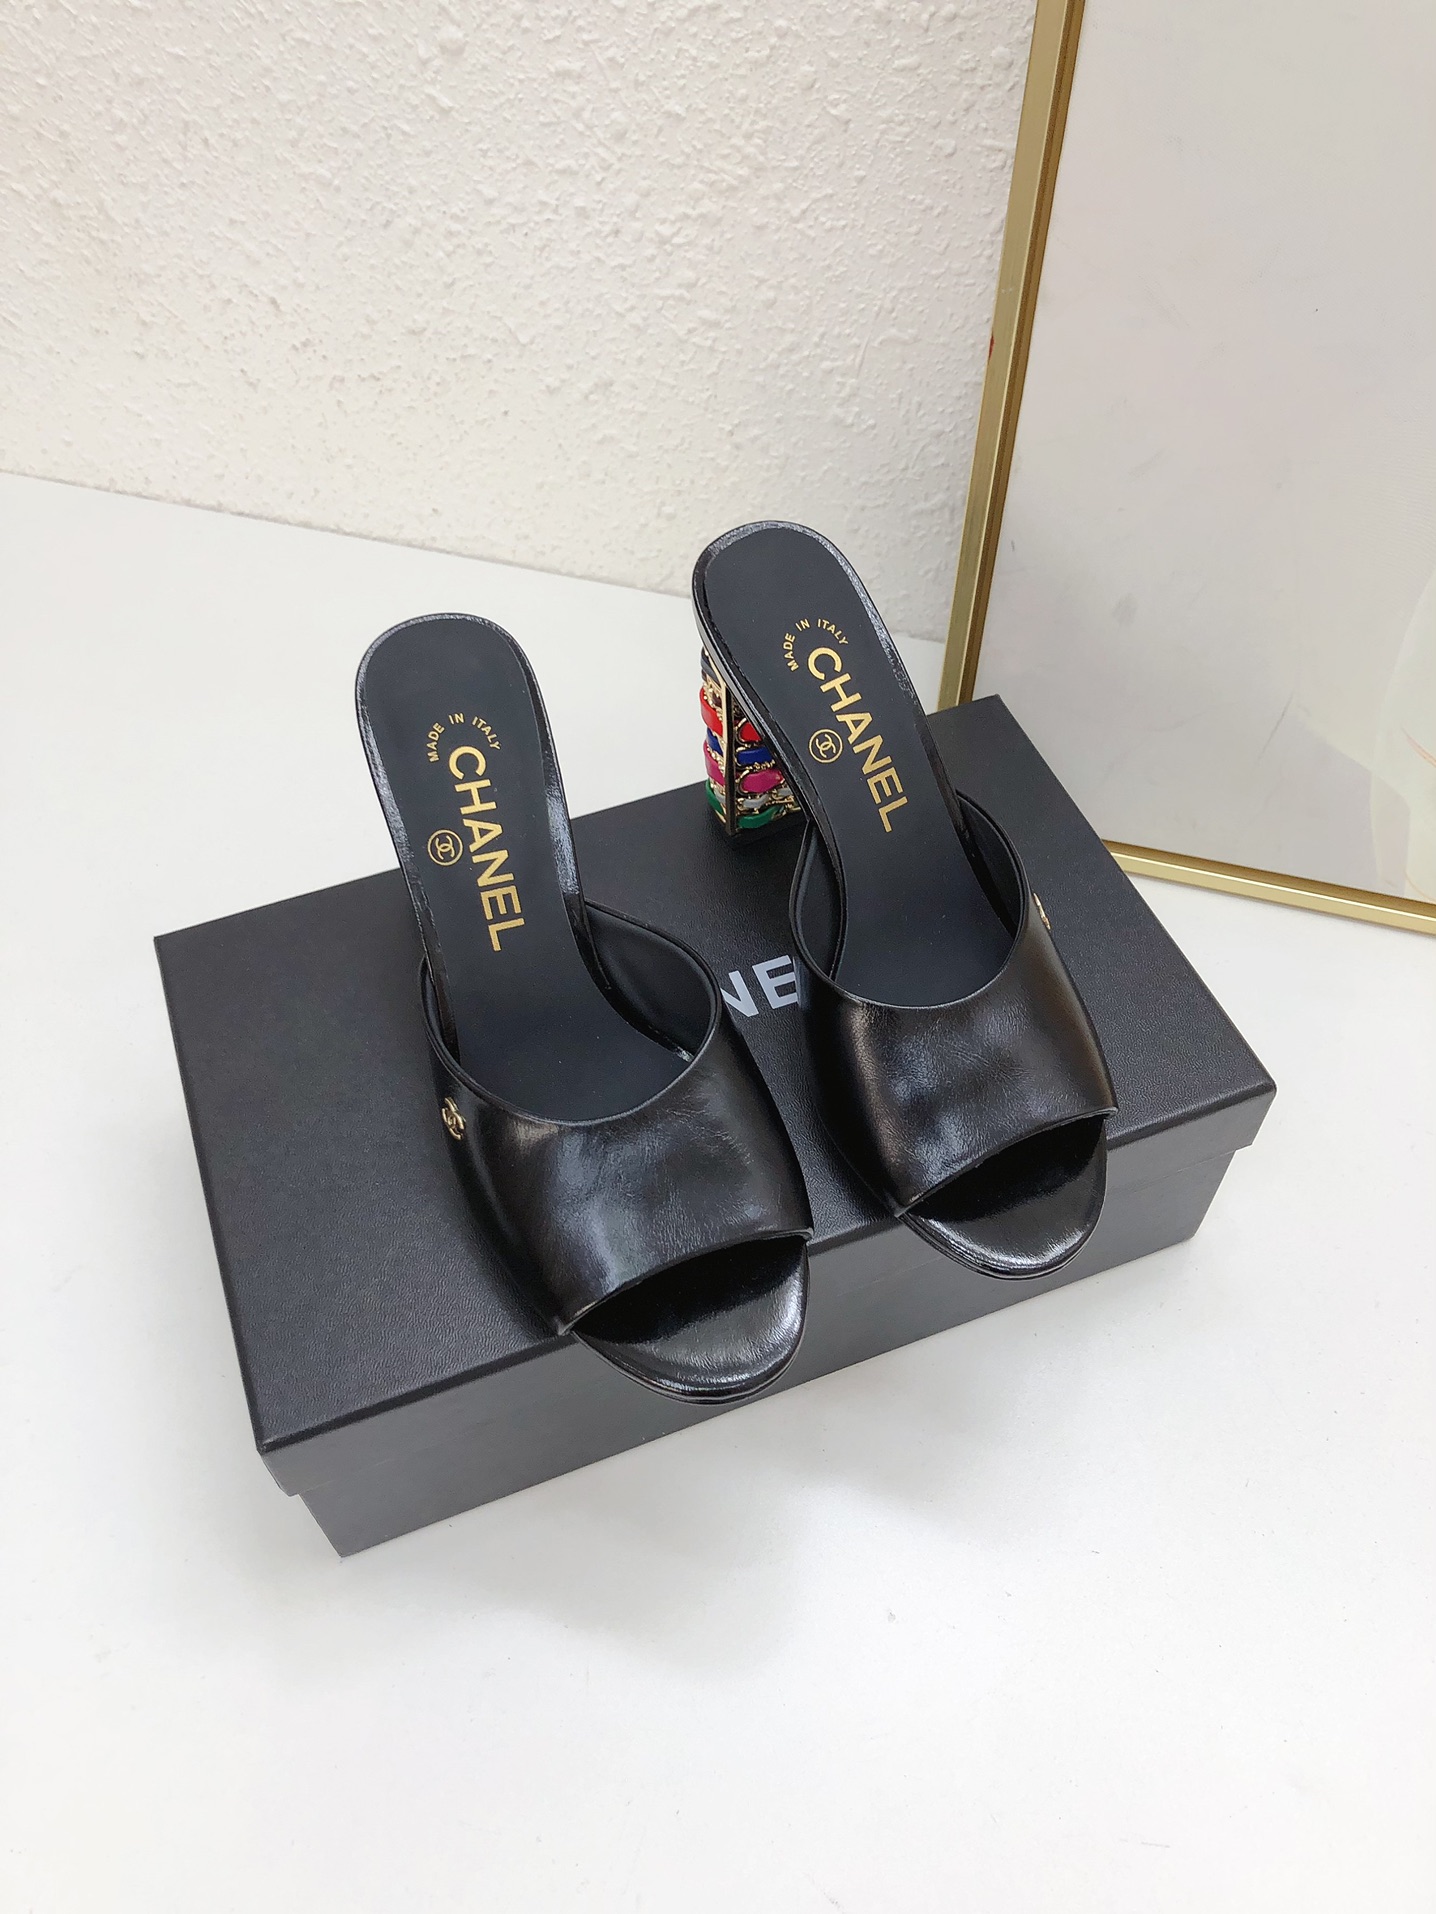 Compra réplica barata de alta calidad 1: 1
 Chanel Zapatos Sandalias Pantuflas Dermis Piel oveja Colección primavera – verano